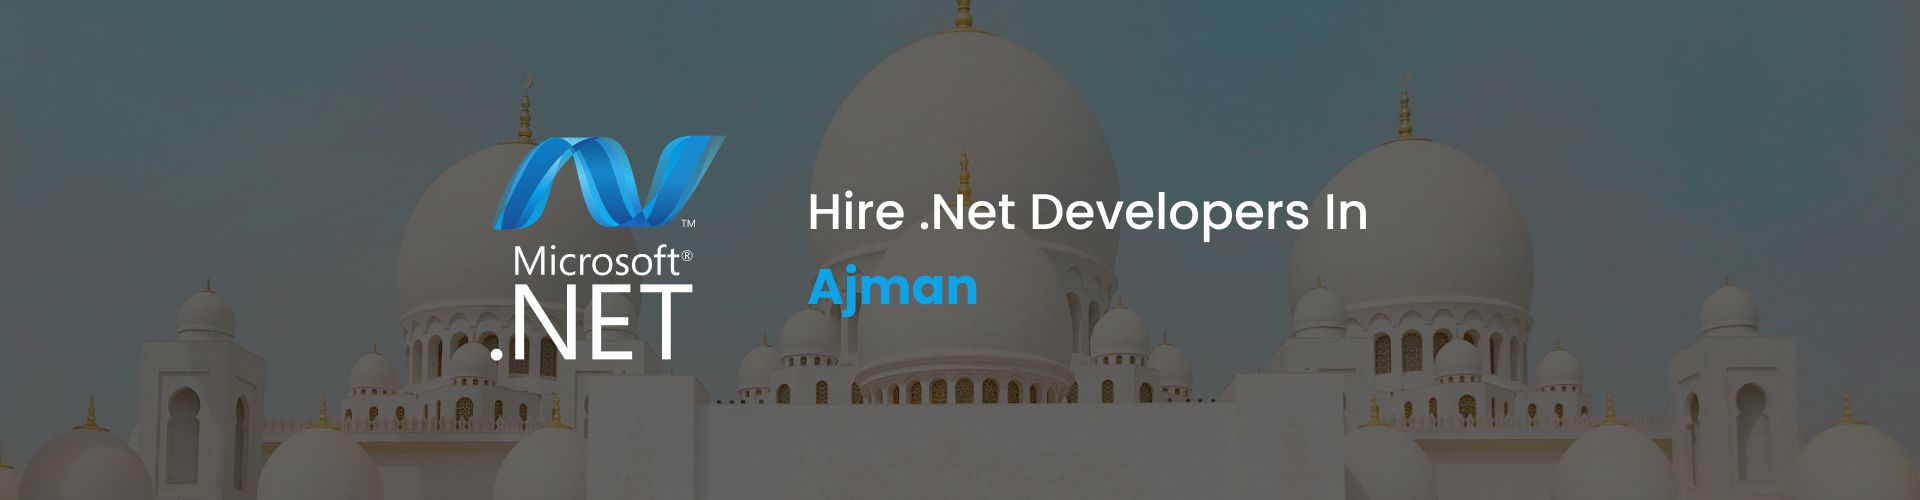 hire .net developers in ajman